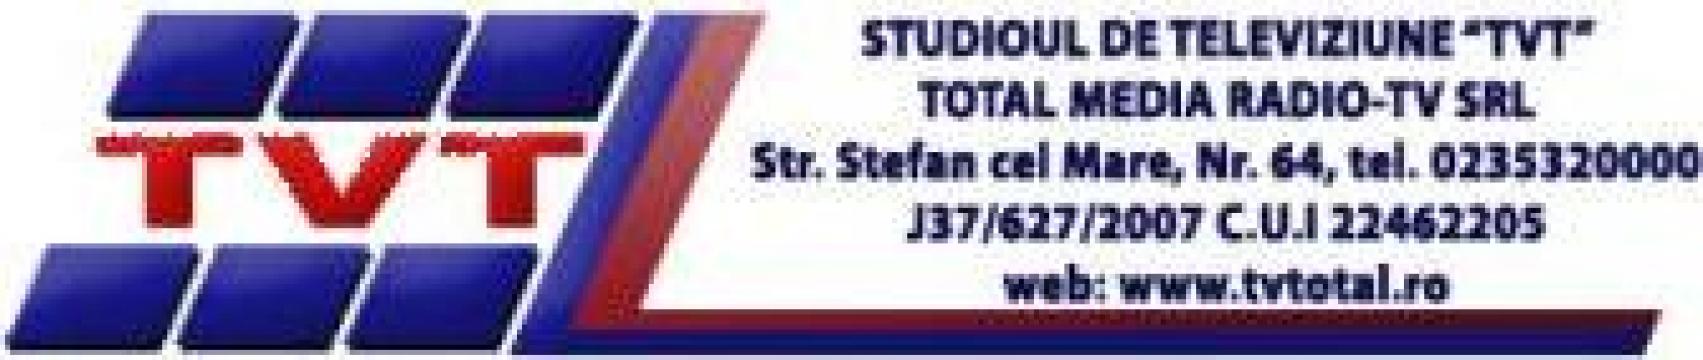 Publicitate studioul de televiziune Tvt de la Total Media Radio- Tv